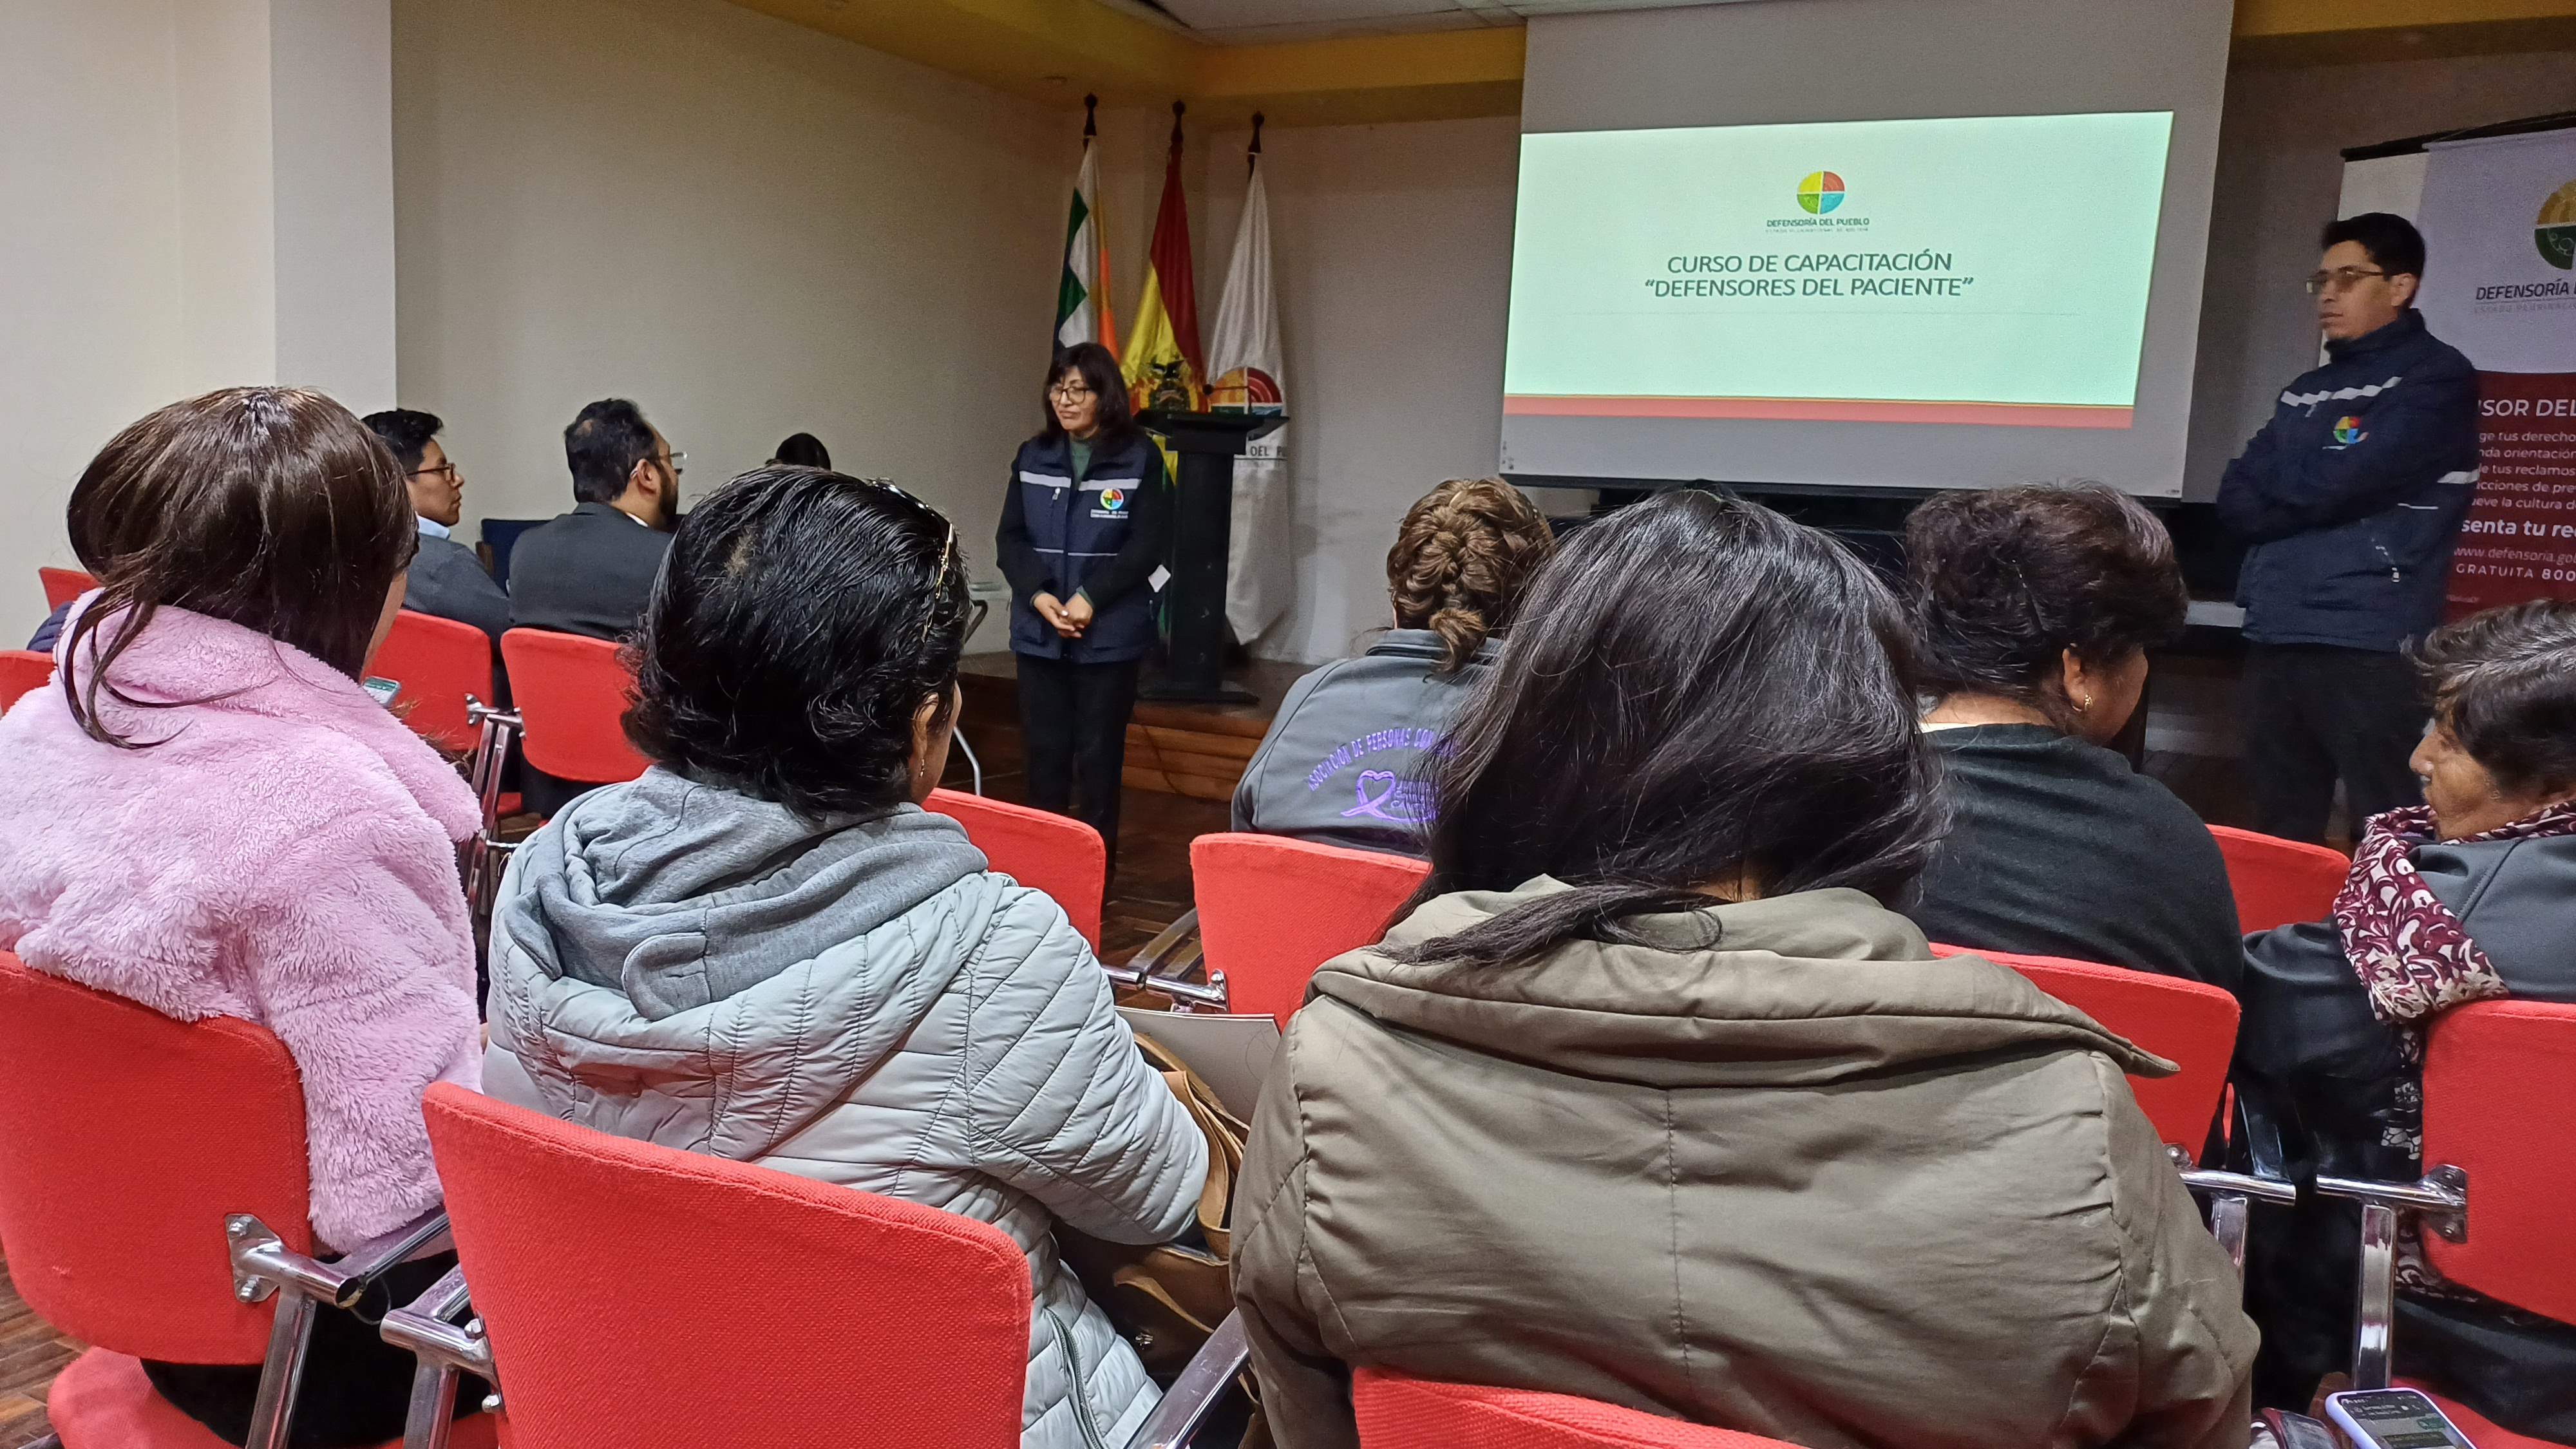 Defensoría del Pueblo socializó el Proyecto “Defensor del Paciente” para su implementación en el Hospital de Clínicas de La Paz